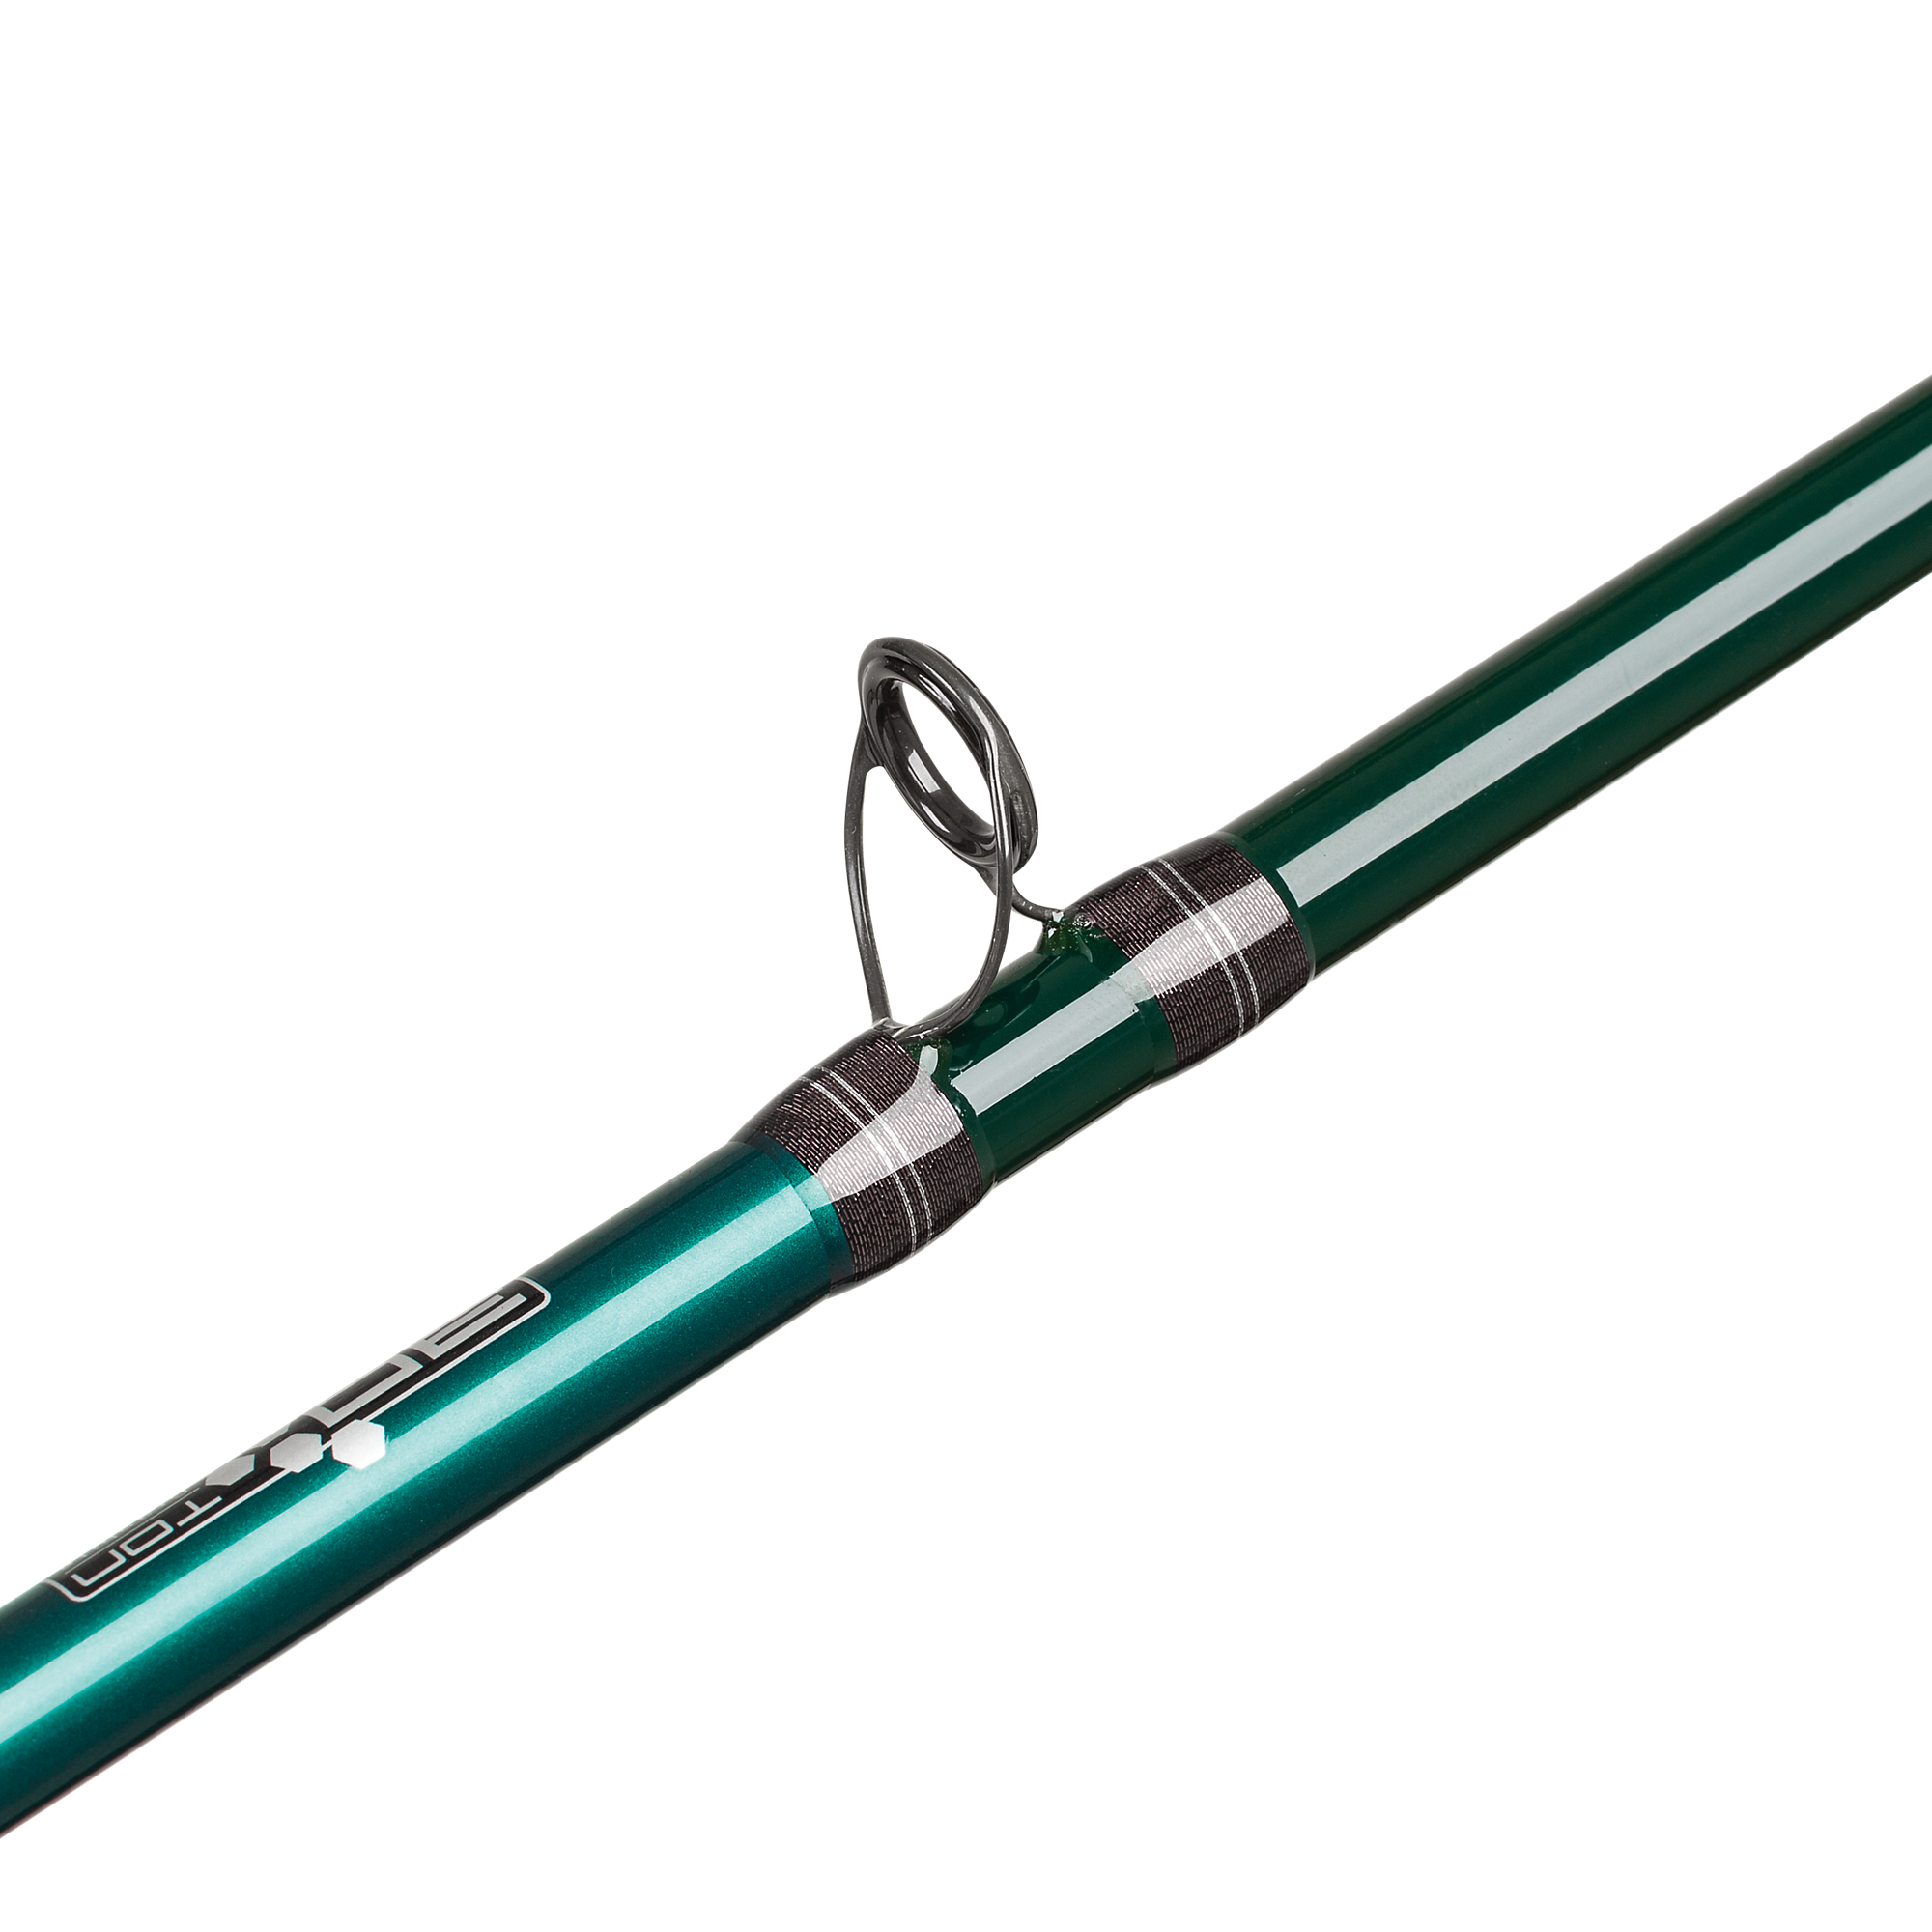 Abu Garcia Beast X Pike Casting Rod 2.36m (50-90g)